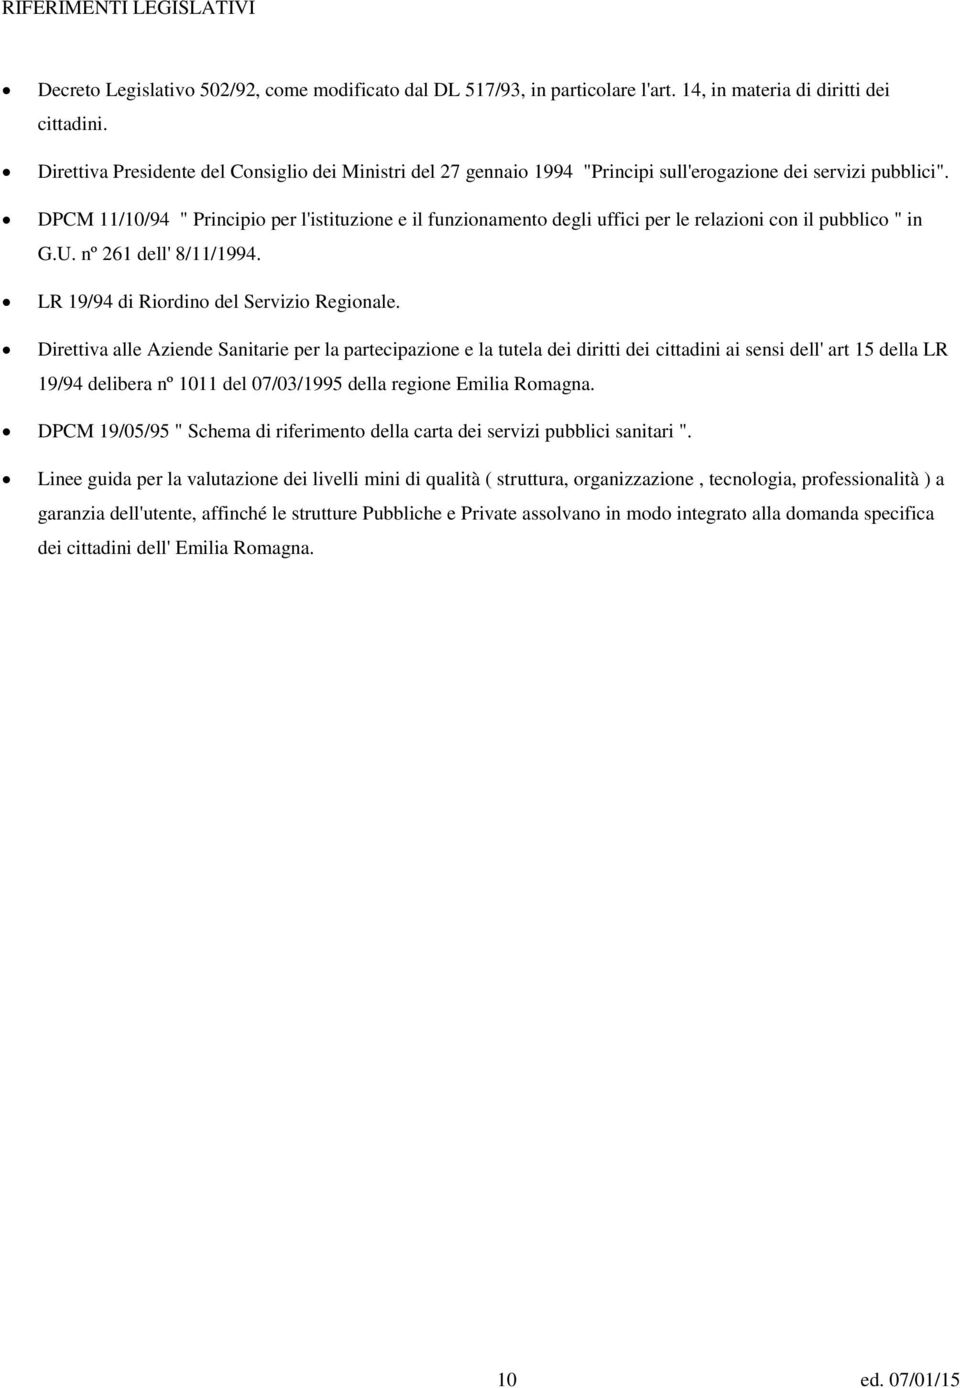 DPCM 11/10/94 " Principio per l'istituzione e il funzionamento degli uffici per le relazioni con il pubblico " in G.U. nº 261 dell' 8/11/1994. LR 19/94 di Riordino del Servizio Regionale.